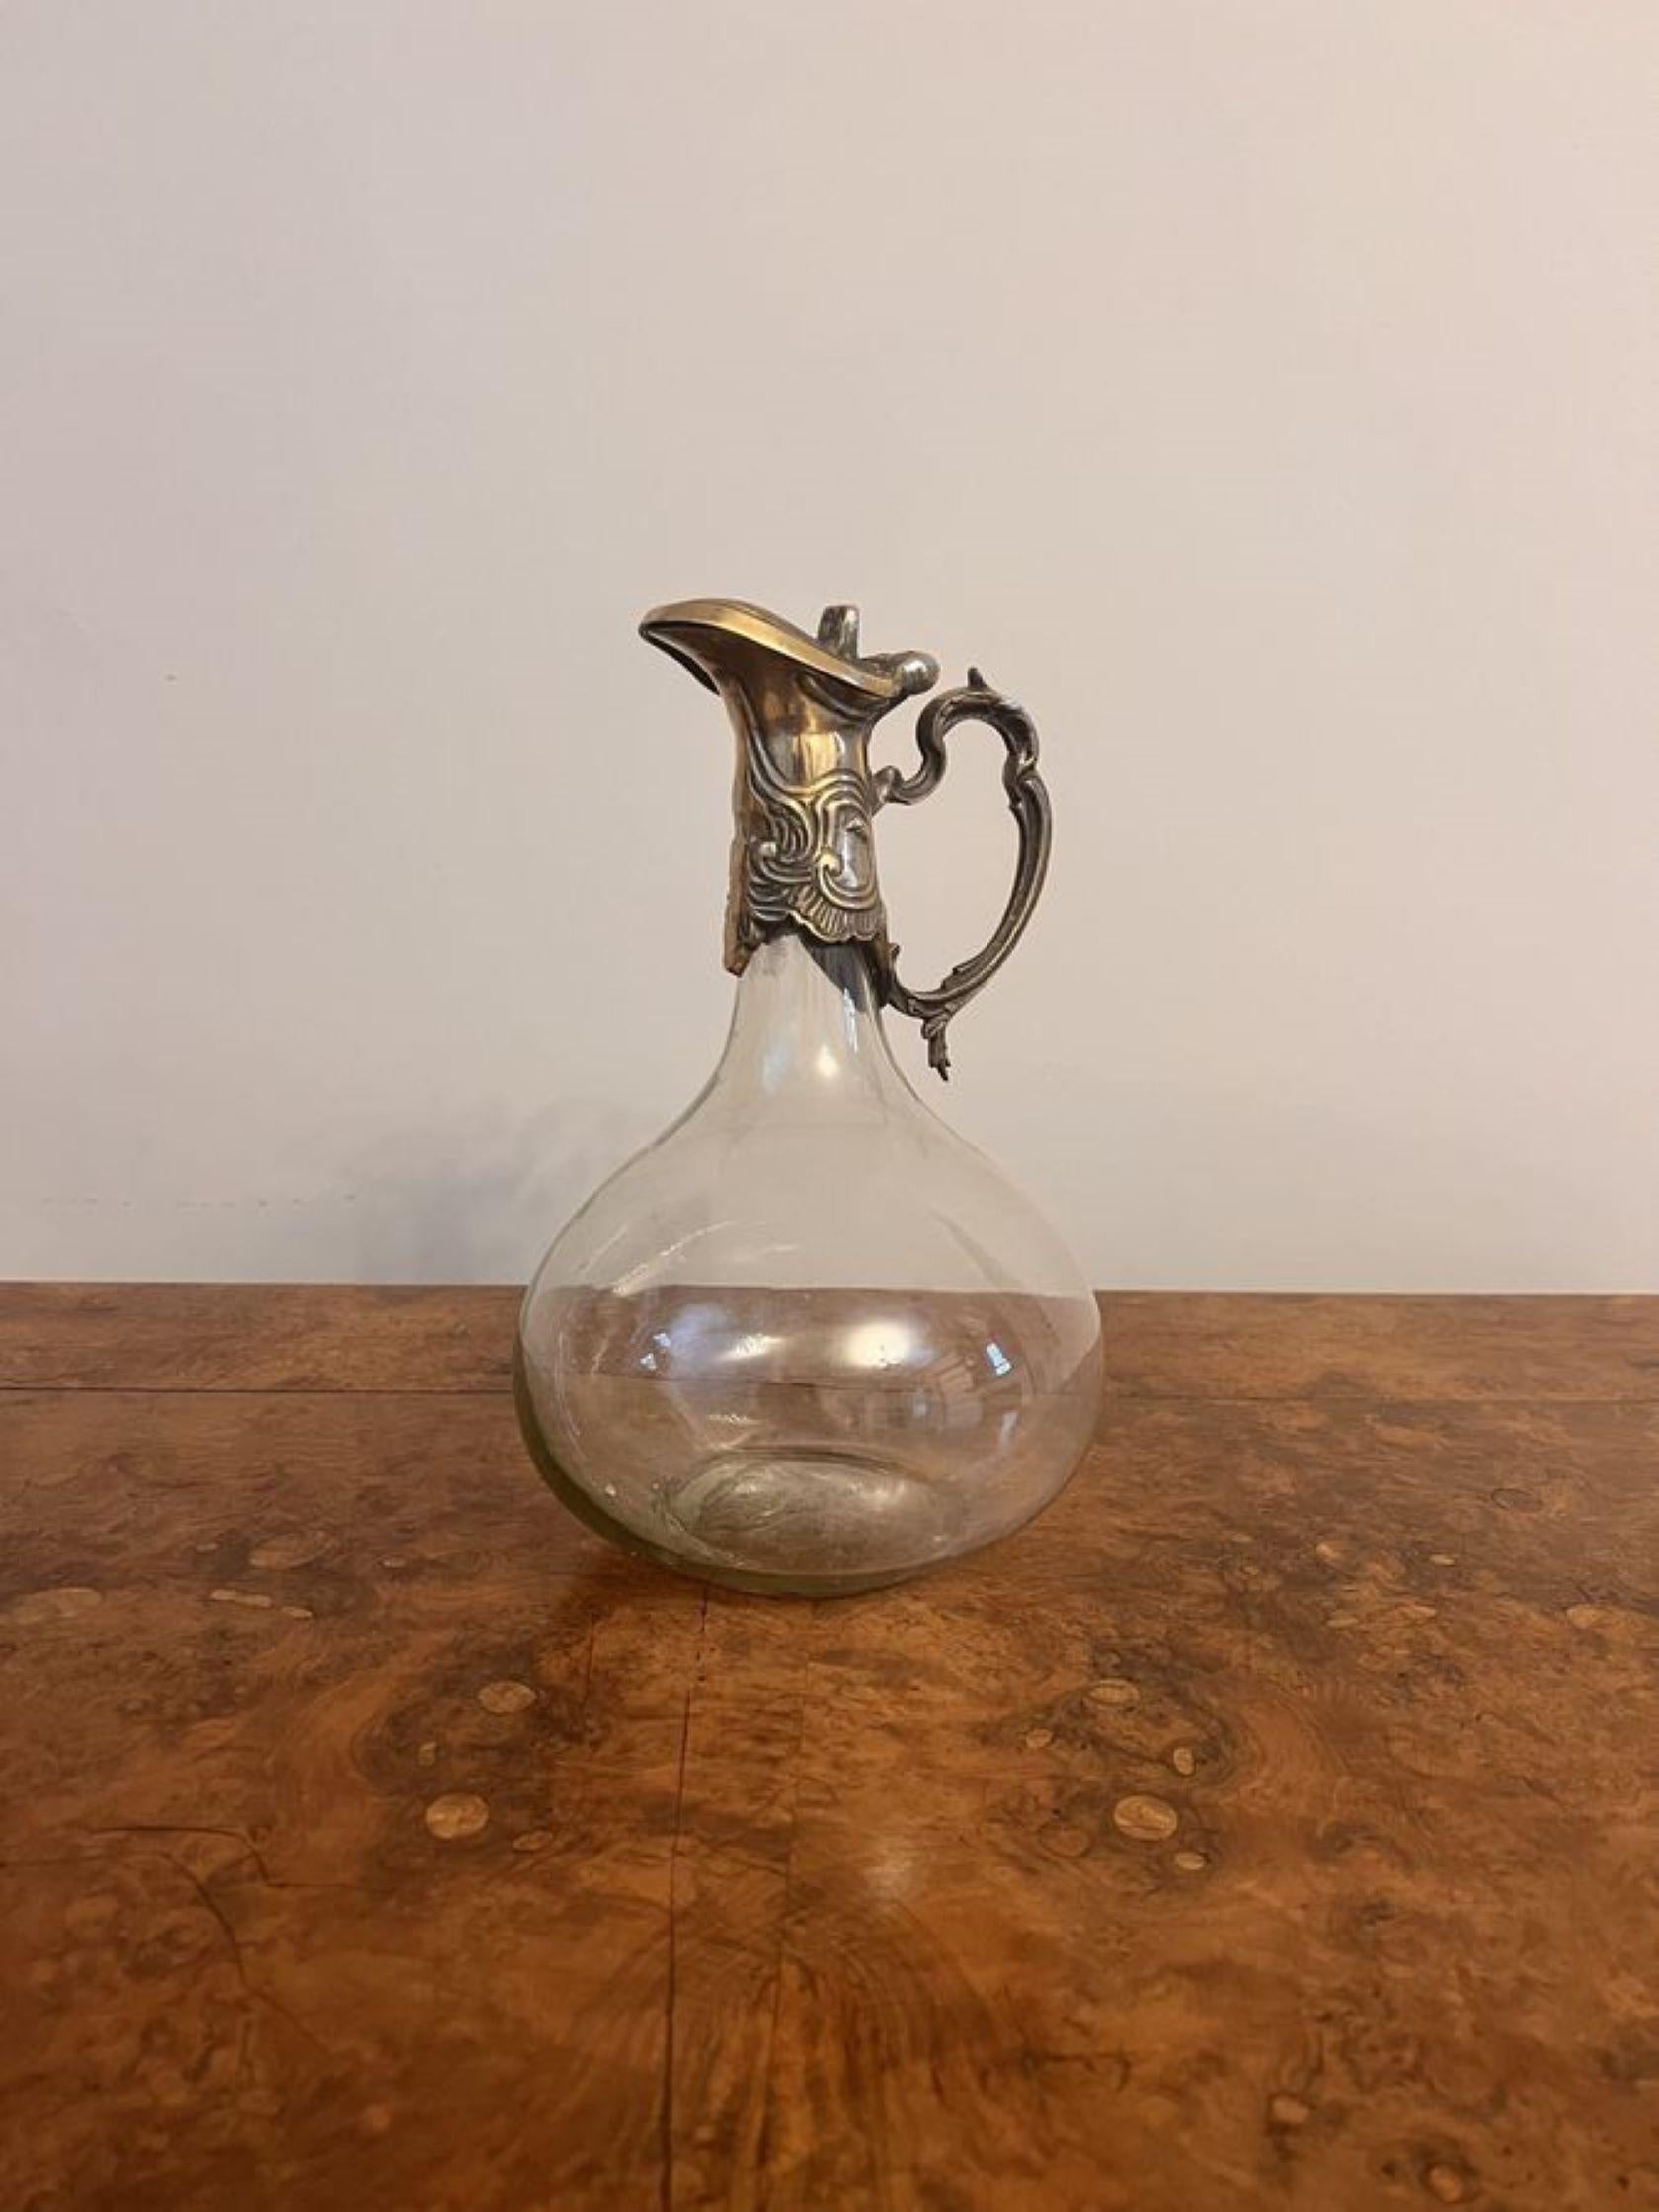 Antique art nouveau quality silver plated claret jug, having an art nouveau shaped handle, decorated lid with a lift up top above a bulbous shaped claret jug. 

D. 1895